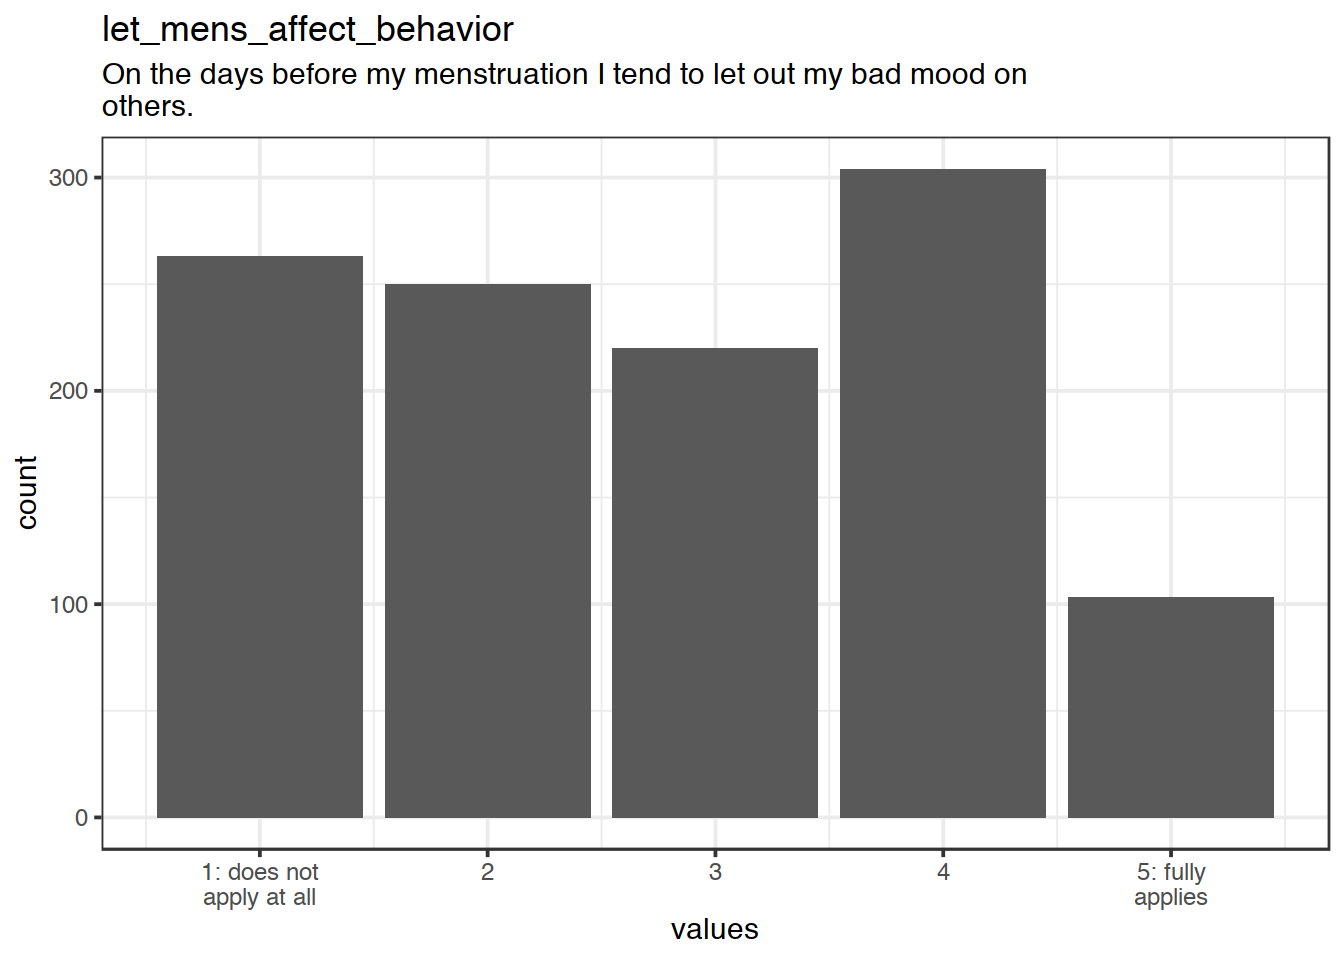 Distribution of values for let_mens_affect_behavior